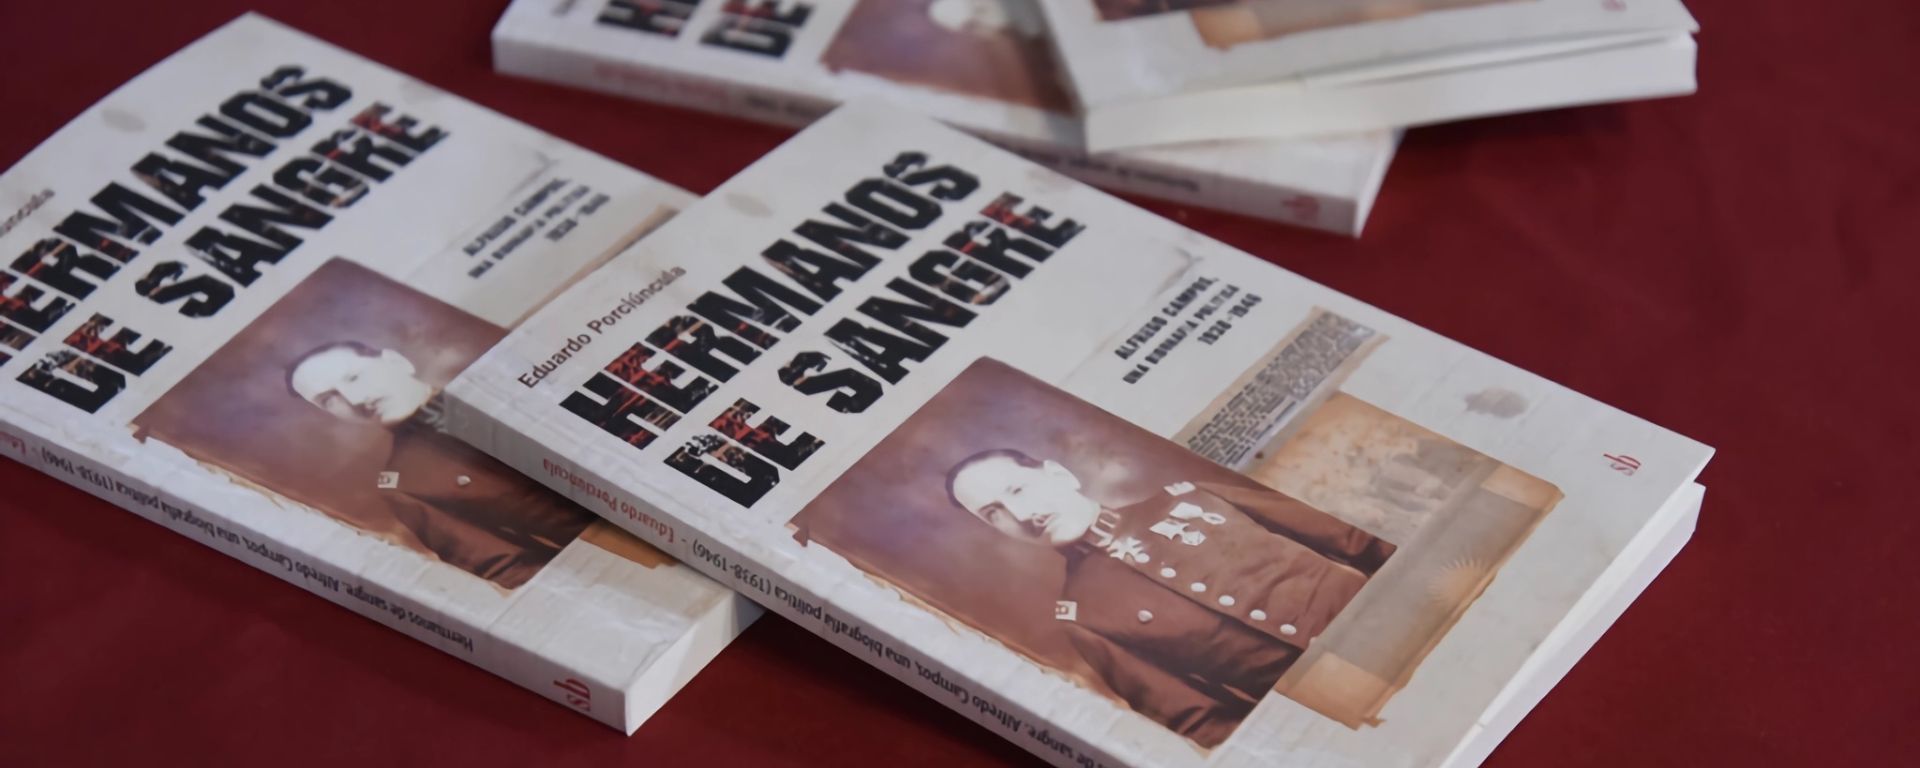 Presentación de "Hermanos de sangre: Alfredo Campos, una biografía"